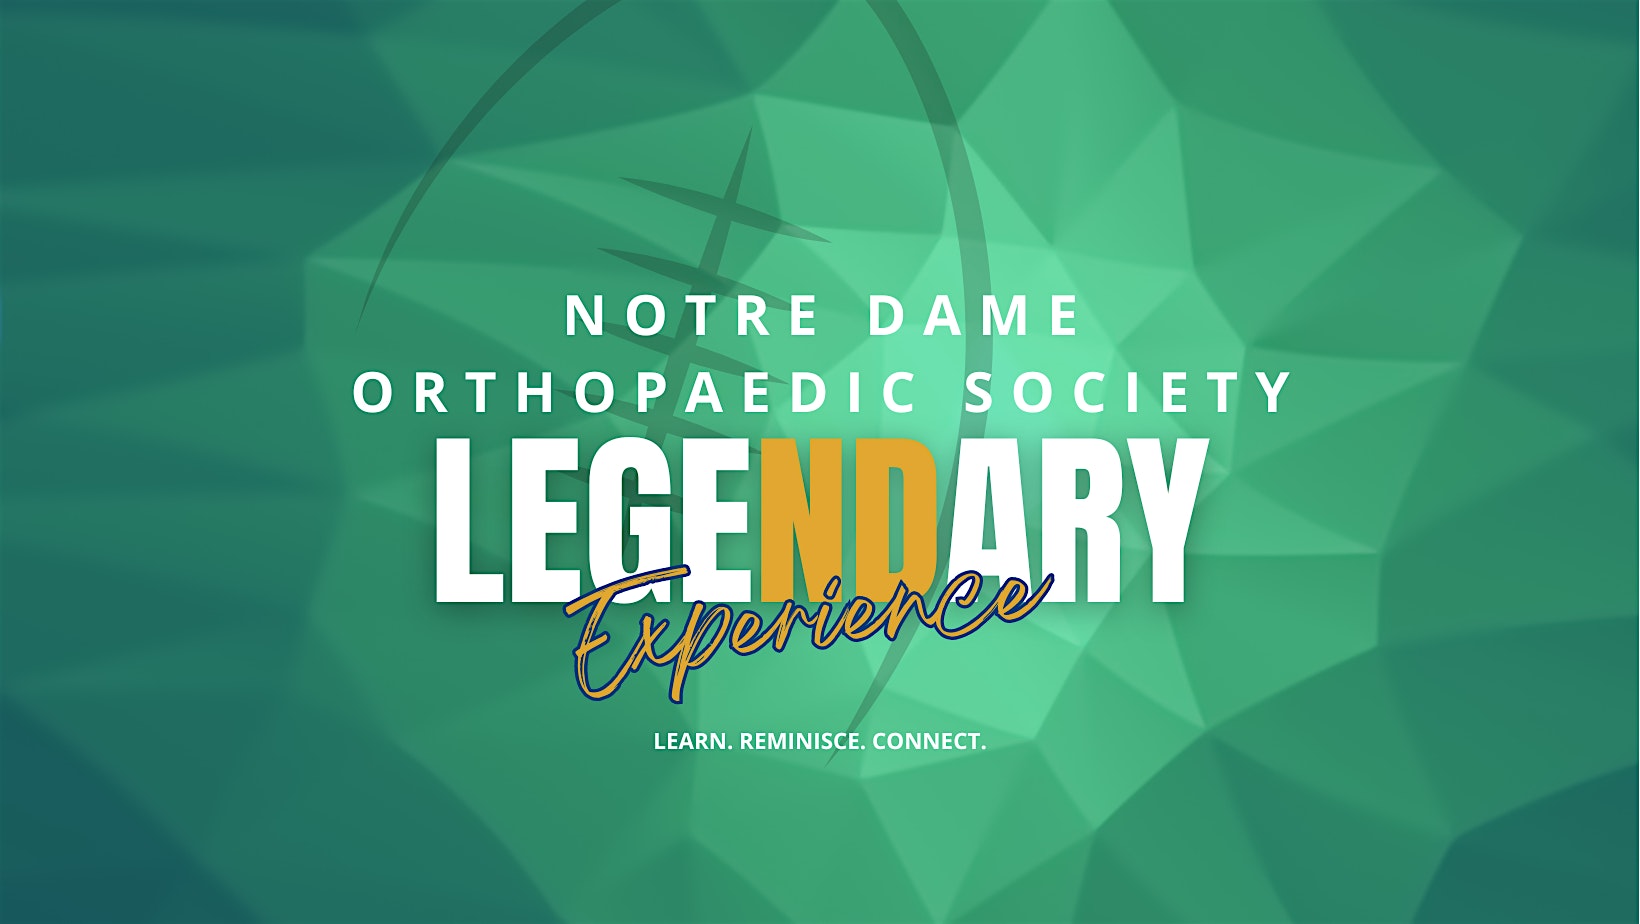 28th Annual Notre Dame Orthopaedic Symposium - Vendor Registration